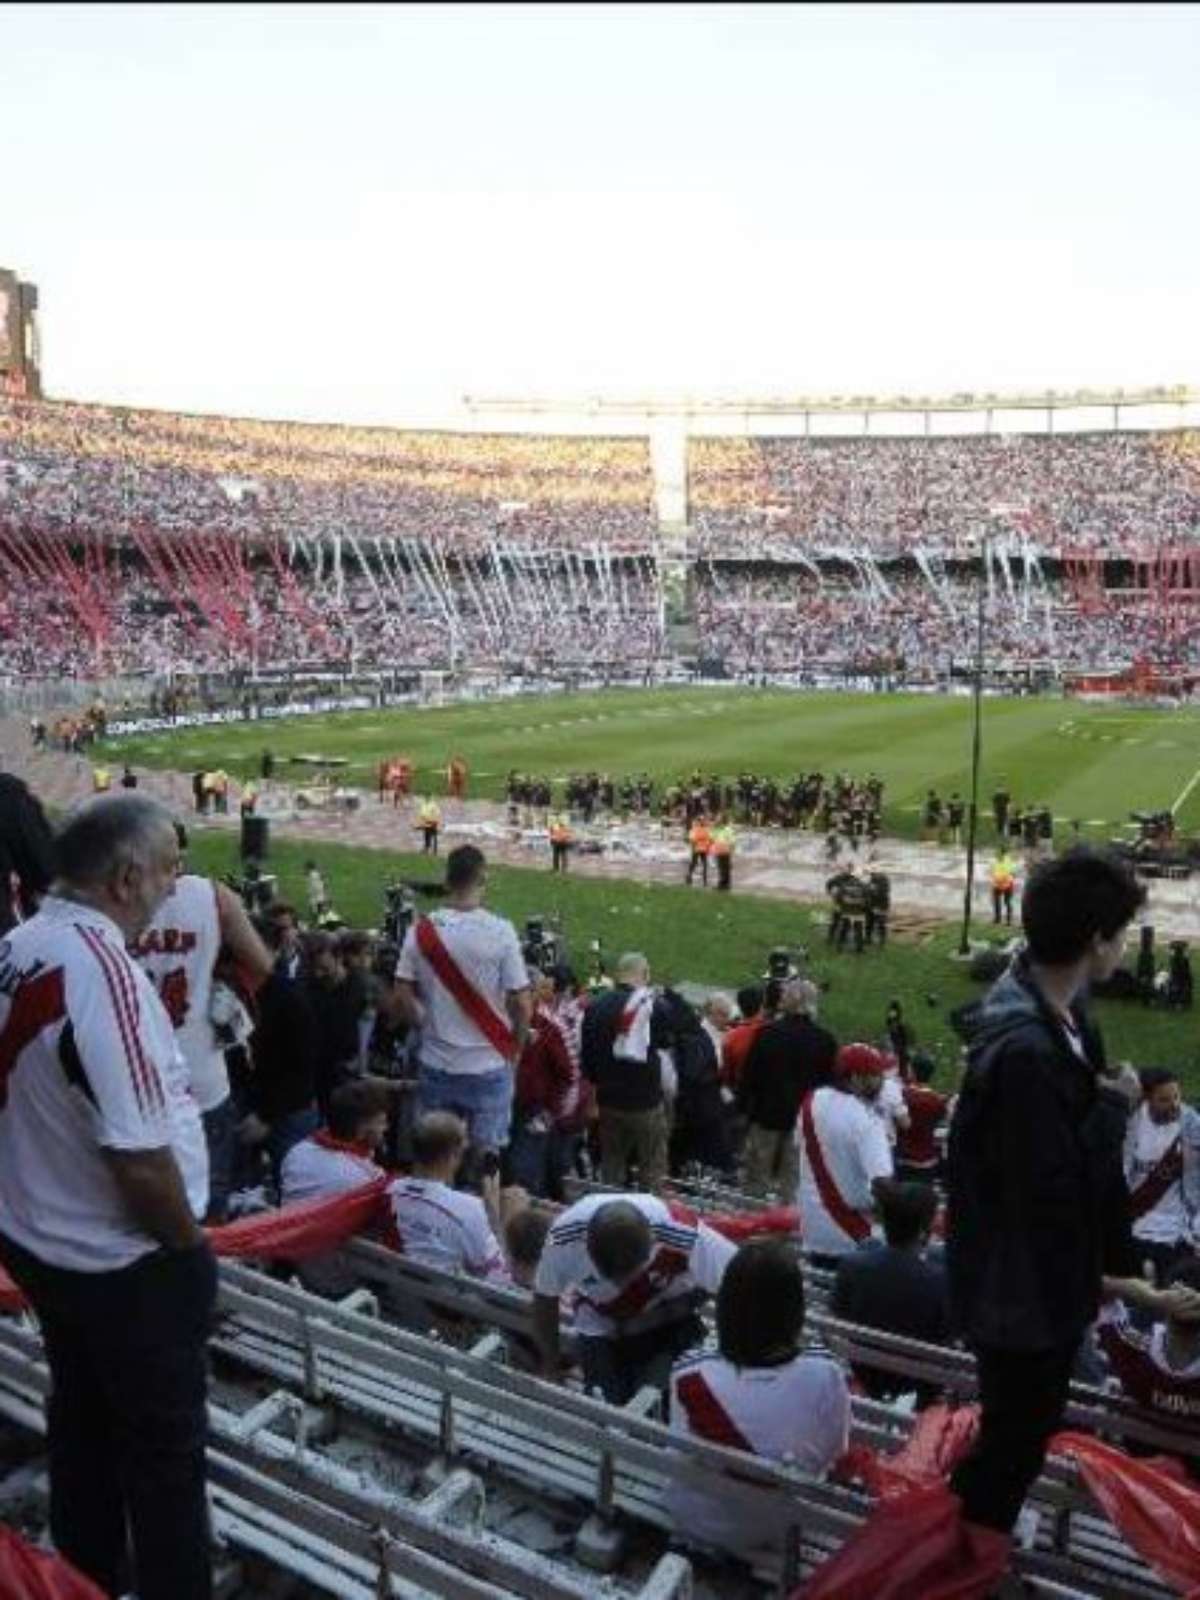 River Plate x Fortaleza: racismo de torcedores argentinos contra